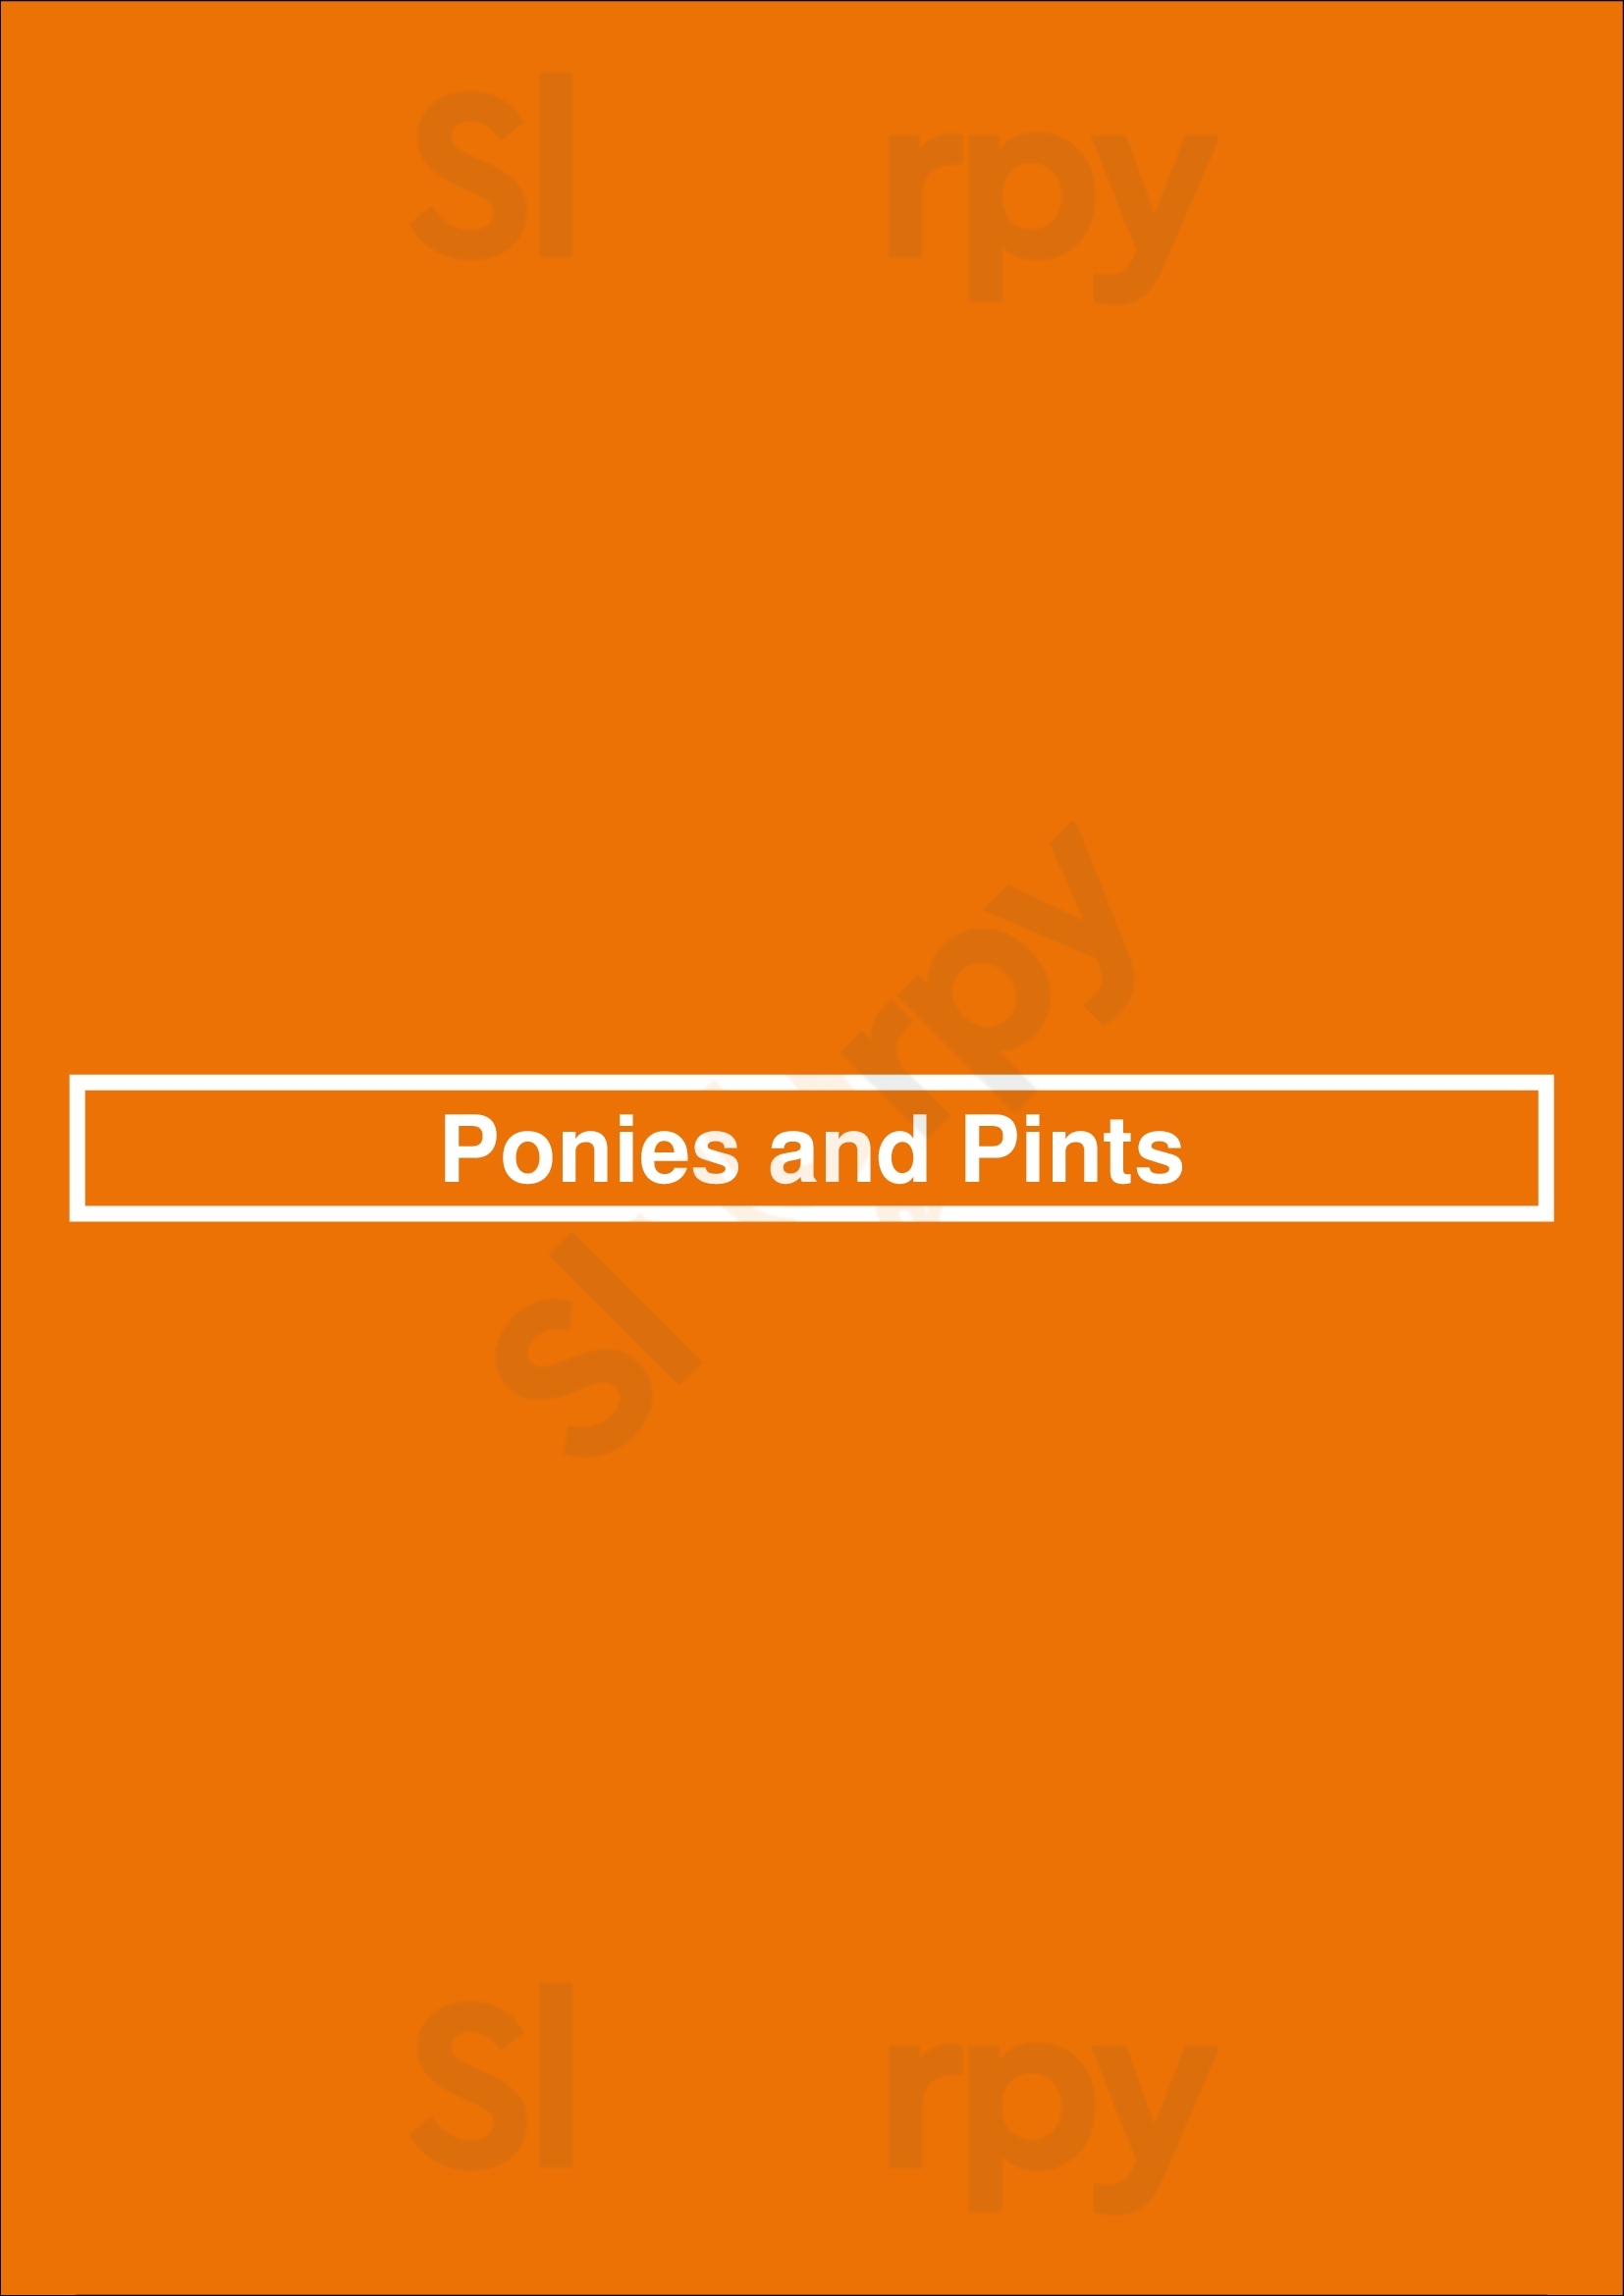 Ponies And Pints Richmond Menu - 1